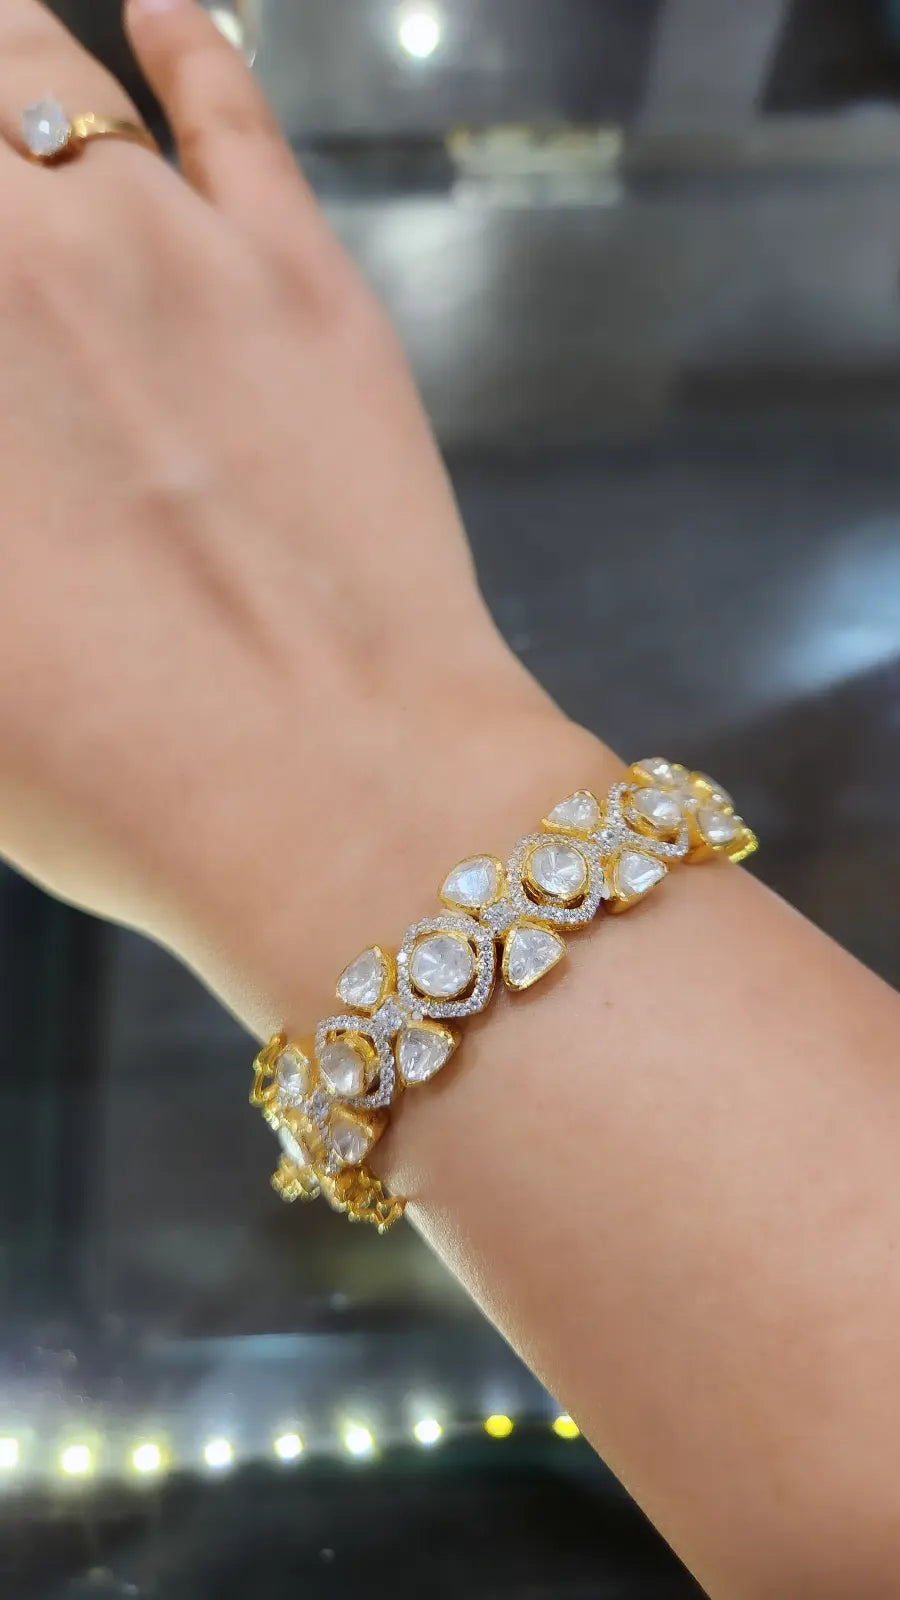 Buy Polki Diamond Bracelet, Genuine Polki Bracelet, Pave Diamond Bracelet,  925 Sterling Silver, Wedding Gift, Gift for Her Online in India - Etsy